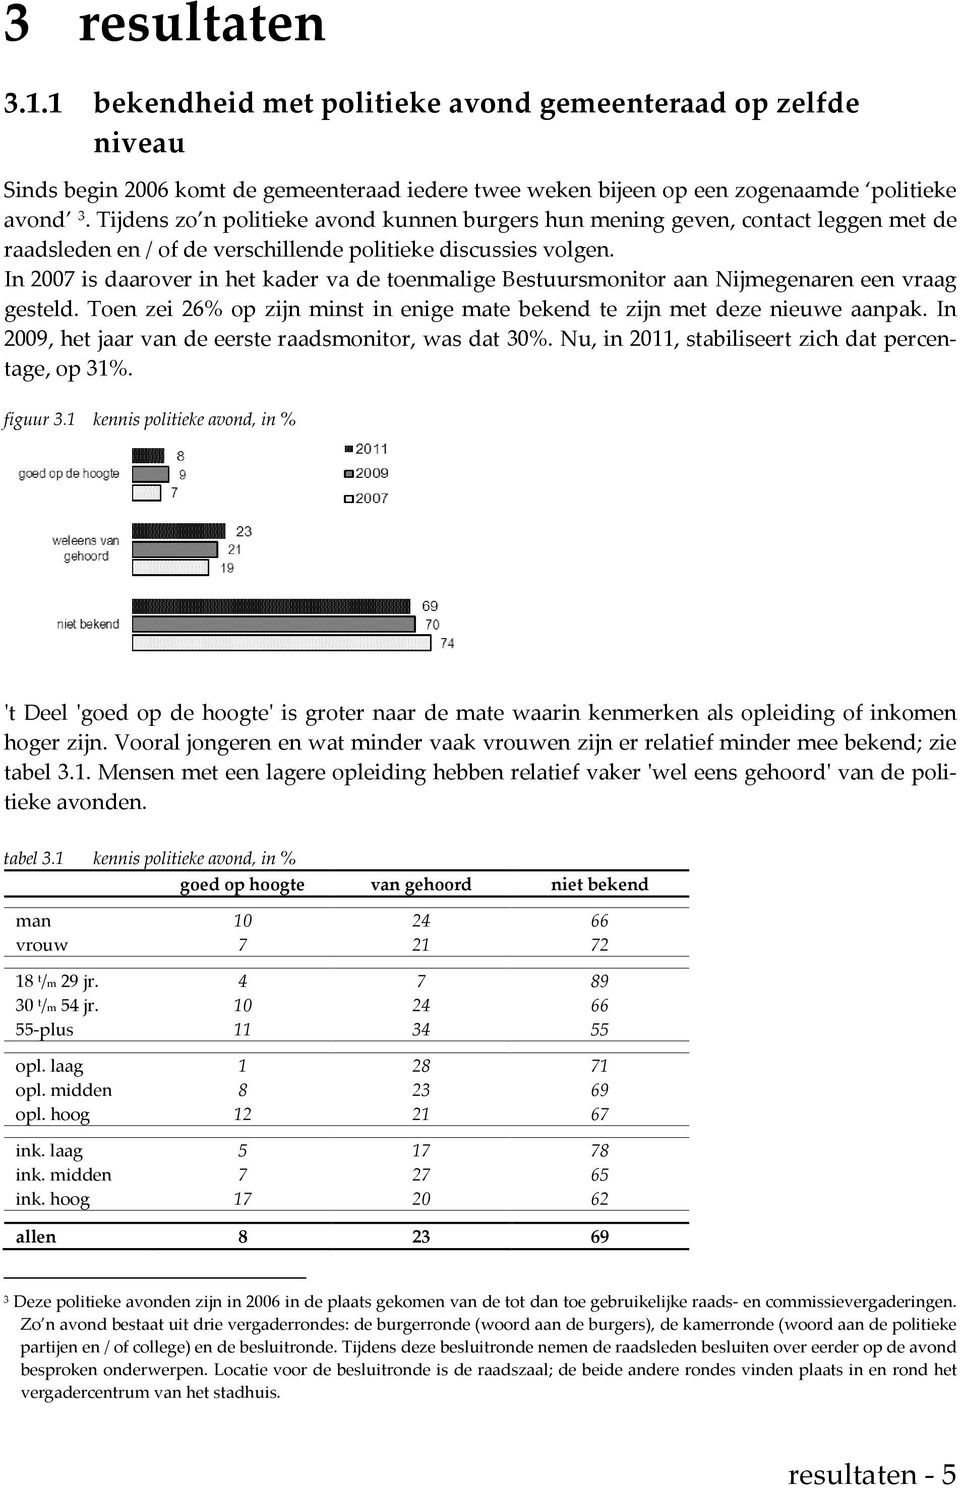 In 2007 is daarover in het kader va de toenmalige Bestuursmonitor aan Nijmegenaren een vraag gesteld. Toen zei 26% op zijn minst in enige mate bekend te zijn met deze nieuwe aanpak.